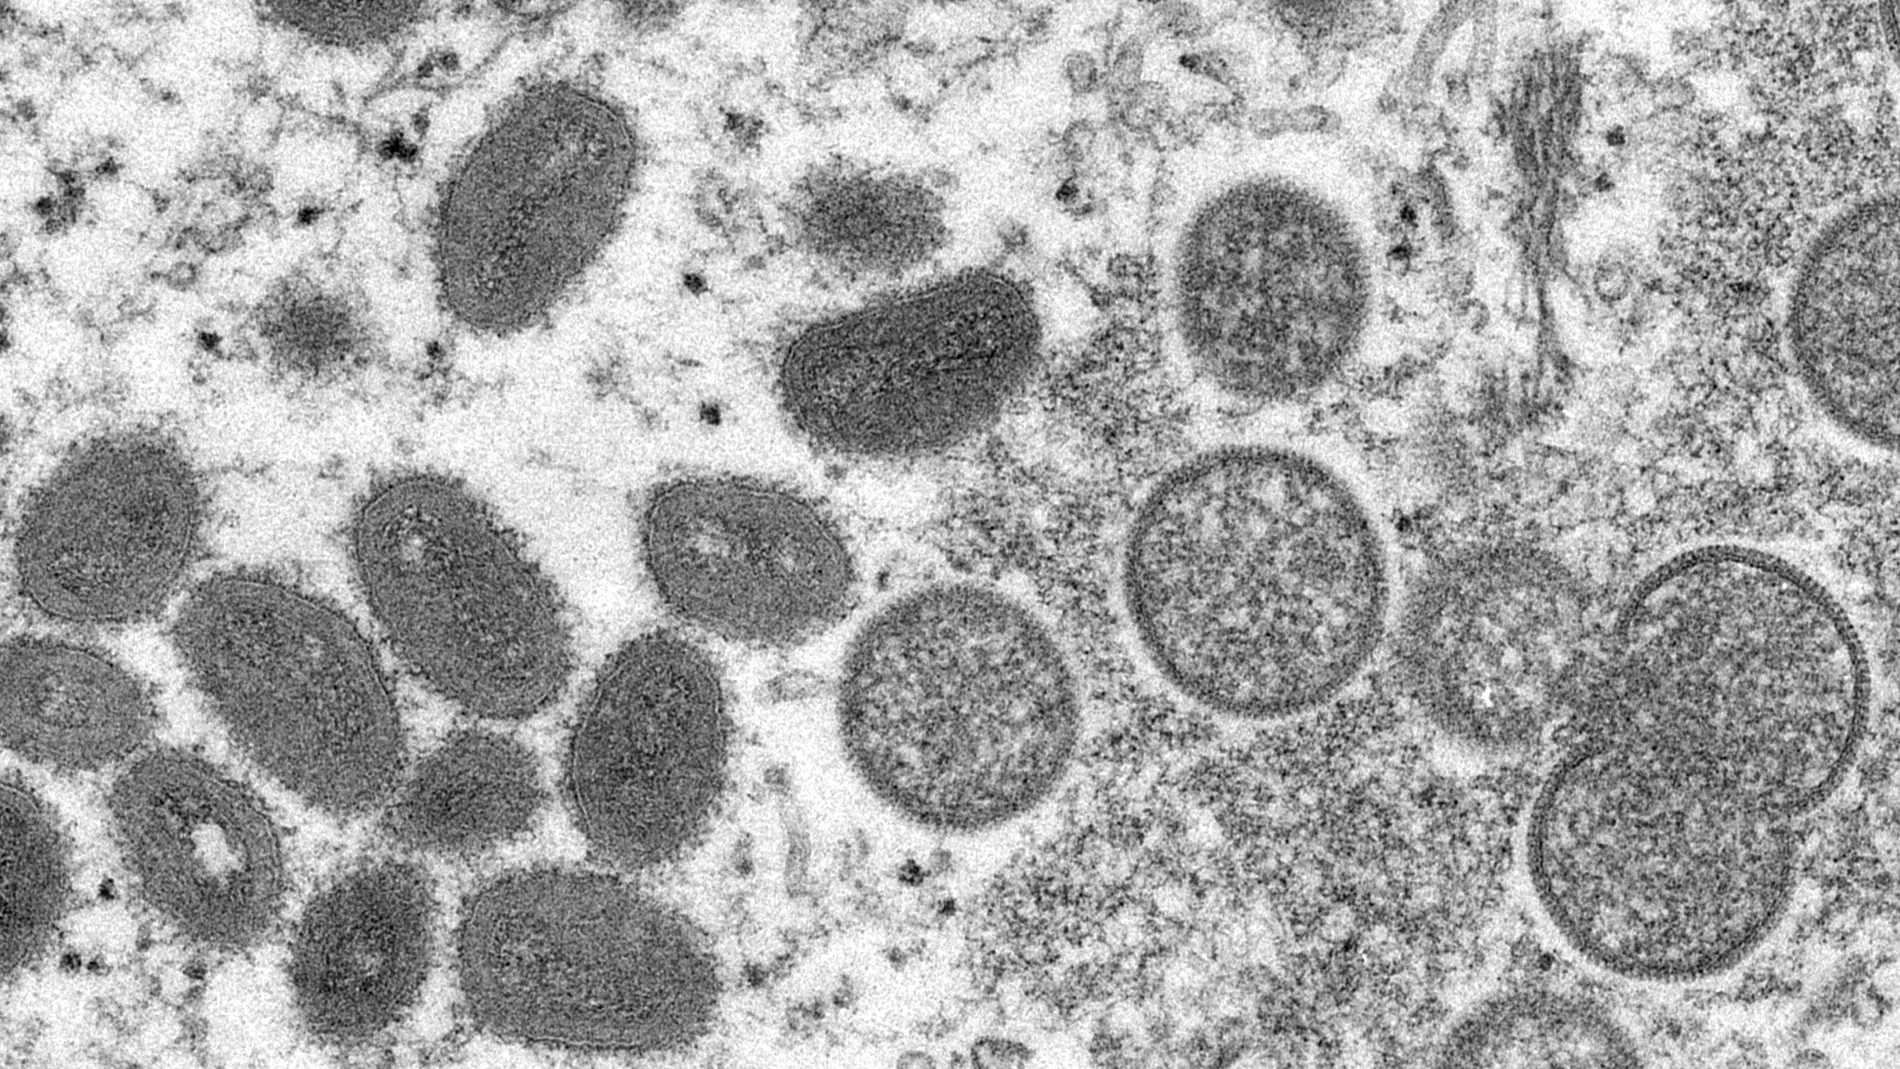 Imagen microscópica del virus causante de la viruela del mono